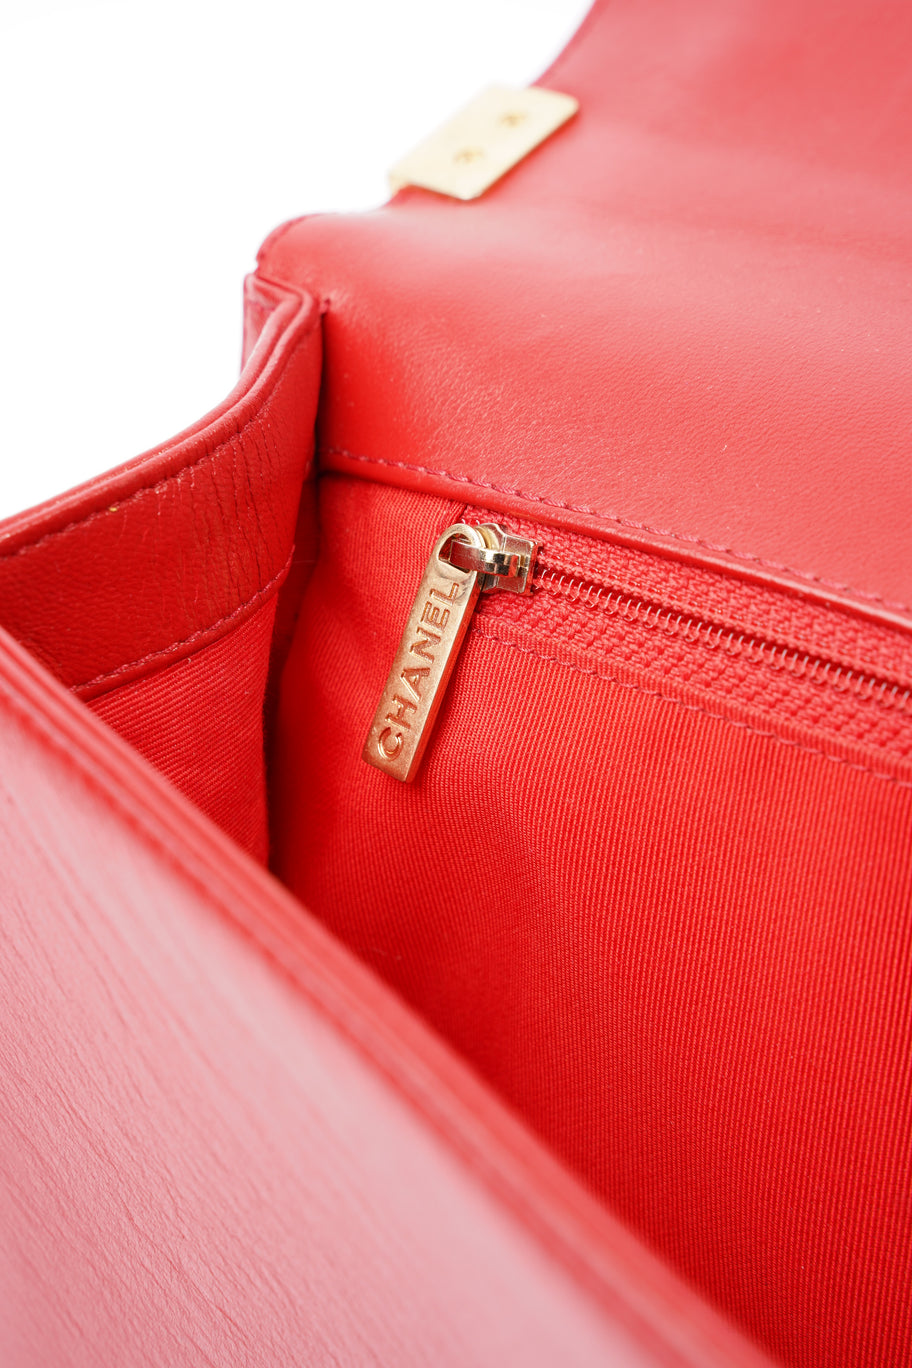 Boy Bag Red Calfskin Leather Large Image 16